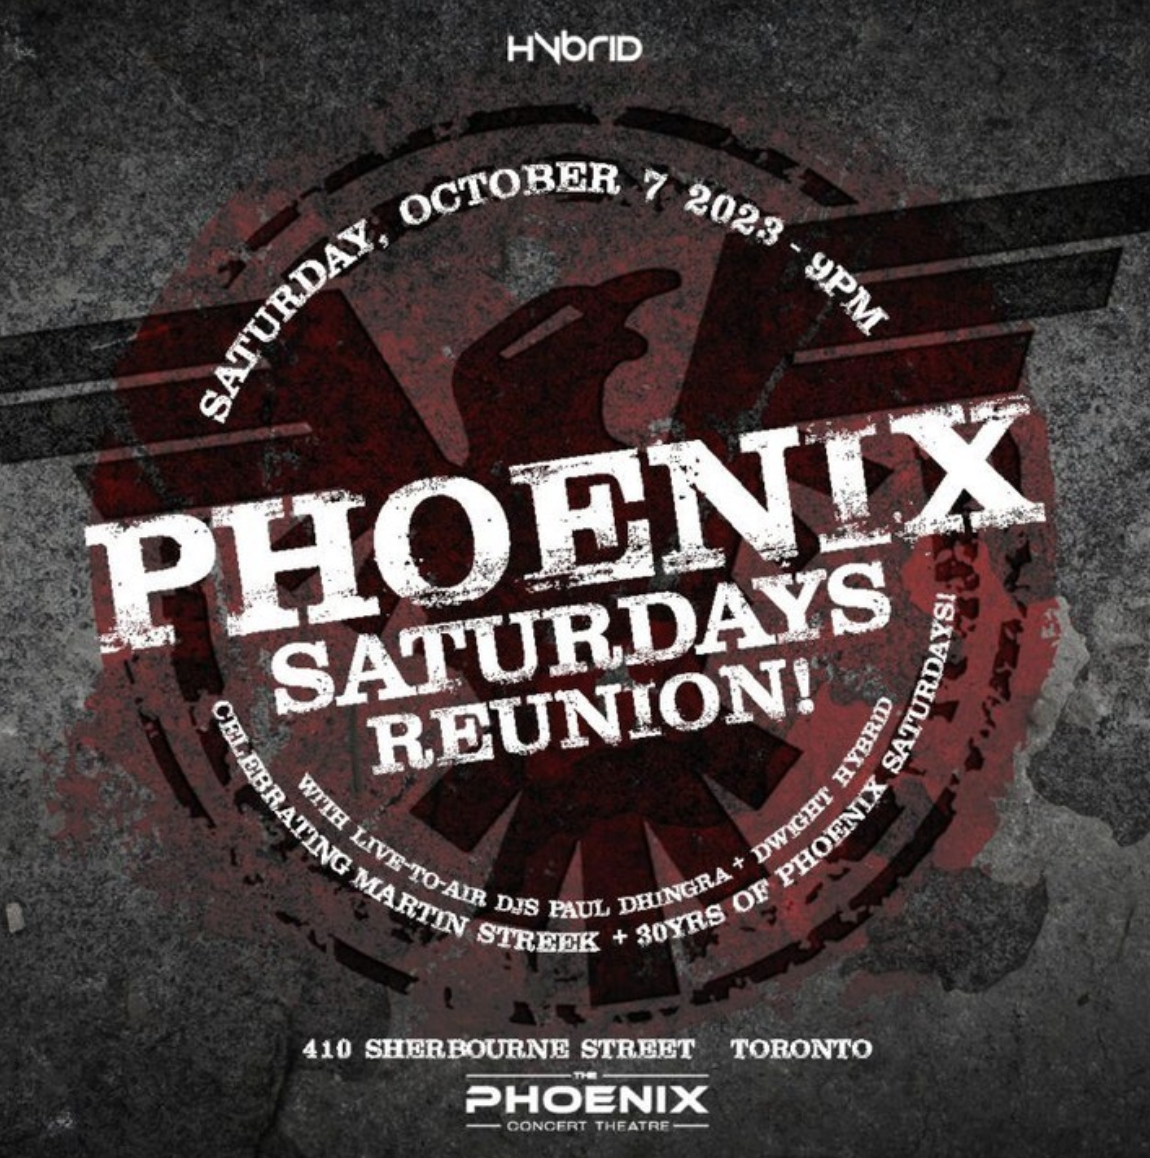 Phoenix Saturdays Reunion!